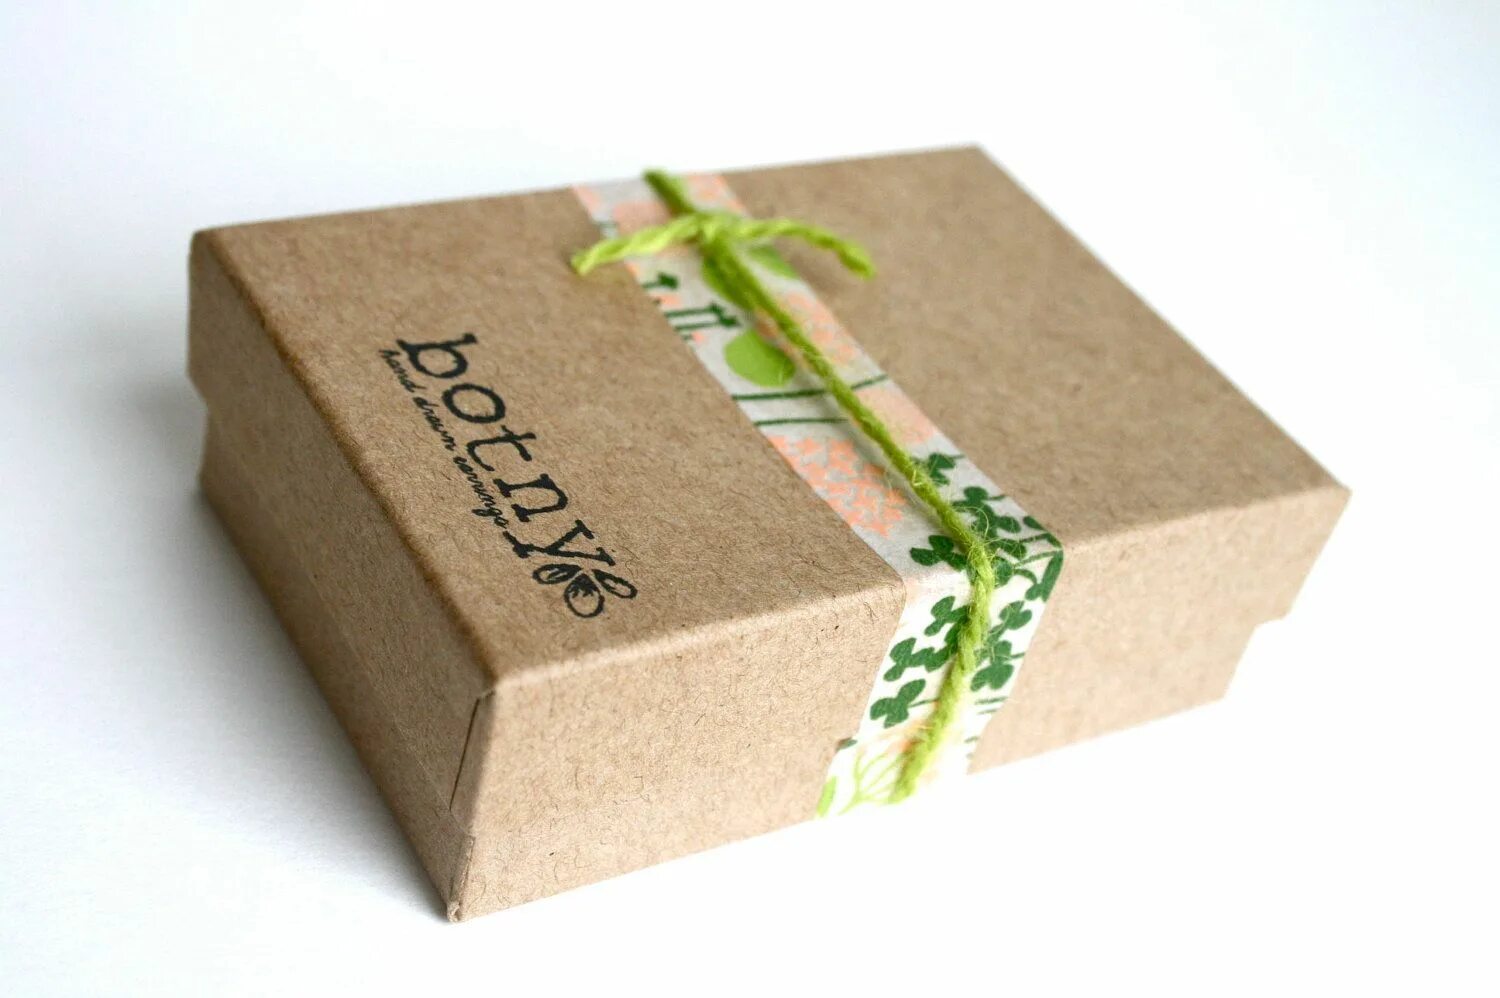 Купить упаковку для продуктов. Эко упаковка. Дизайнерские коробки. Экологичная упаковка для продуктов. Упаковка коробки.